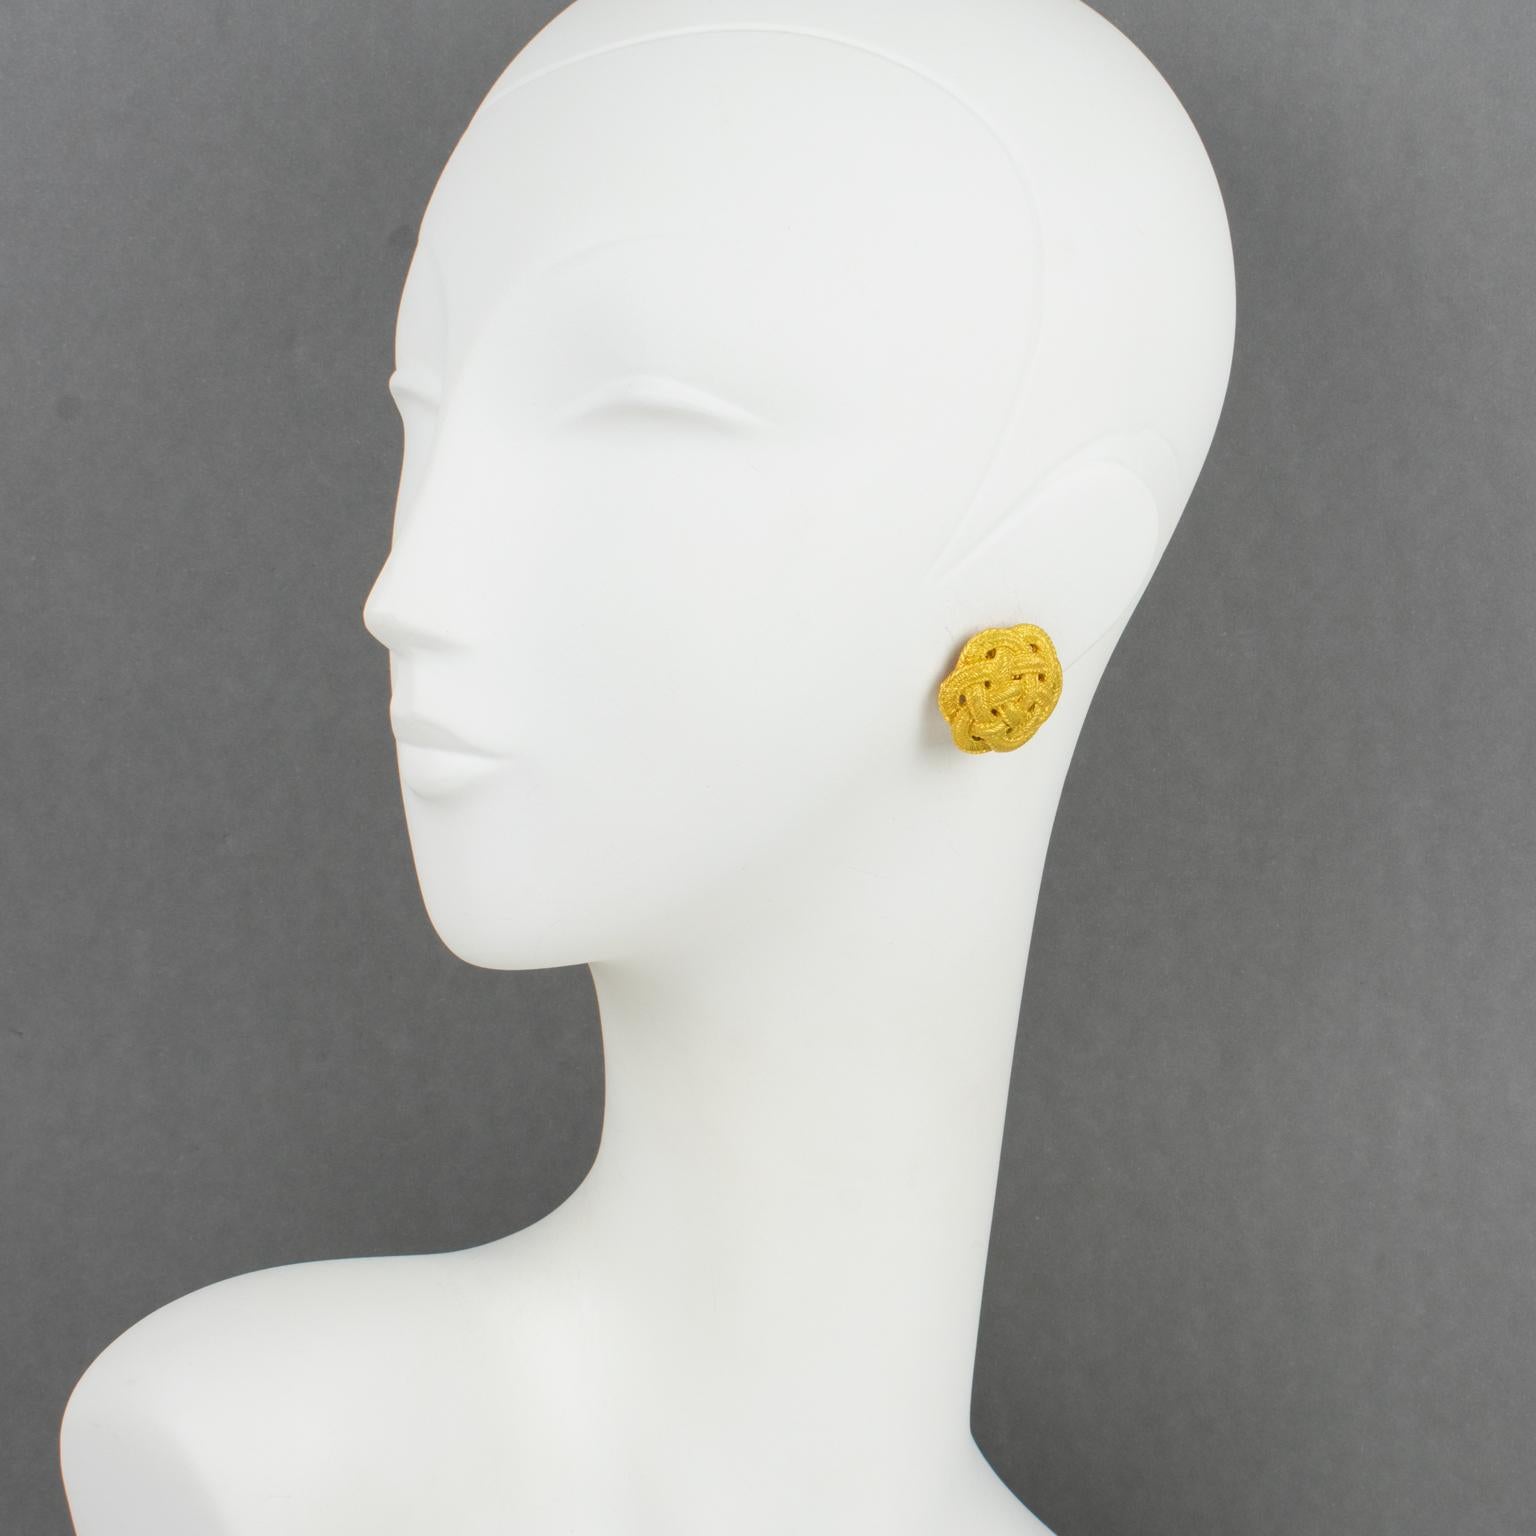 Ces élégantes boucles d'oreilles clip-on Emanuel Ungaro Paris couture présentent une forme arrondie et bombée en métal doré avec un motif sculpté tressé et une texture satinée. Chaque pièce est signée d'une étiquette portant la mention Ungaro.
Les